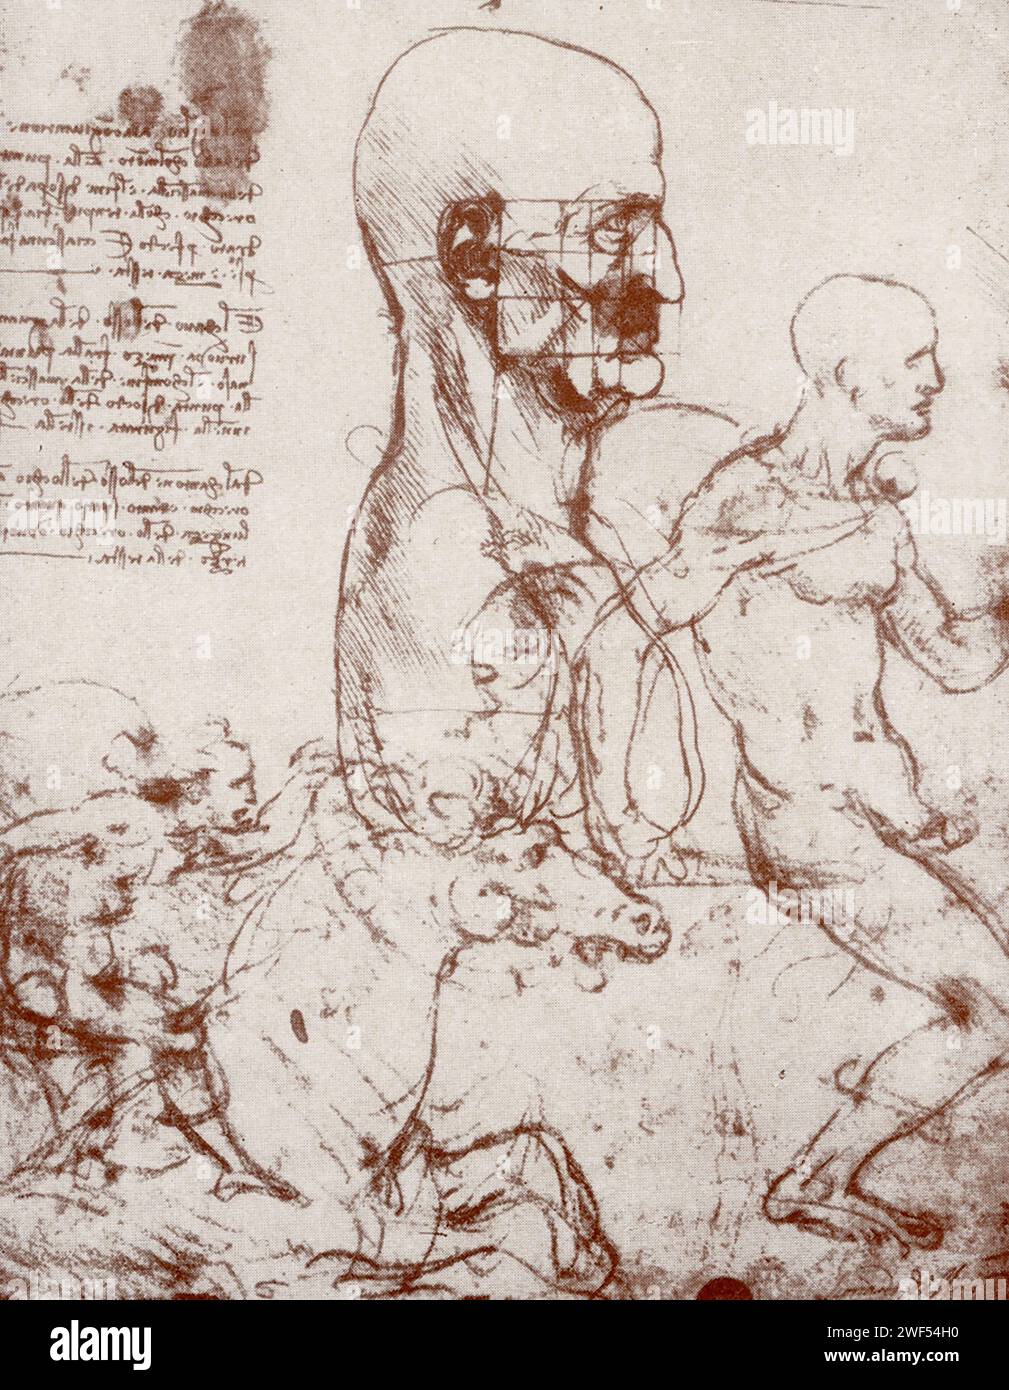 Hier sehen Sie Schnitzel von Leonardo da Vinci. Leonardo di ser Piero da Vinci (1452–1519) war ein italienischer Polymath der Hochrenaissance, der als Maler, Zeichner, Ingenieur, Wissenschaftler, Theoretiker, Bildhauer und Architekt. Stockfoto